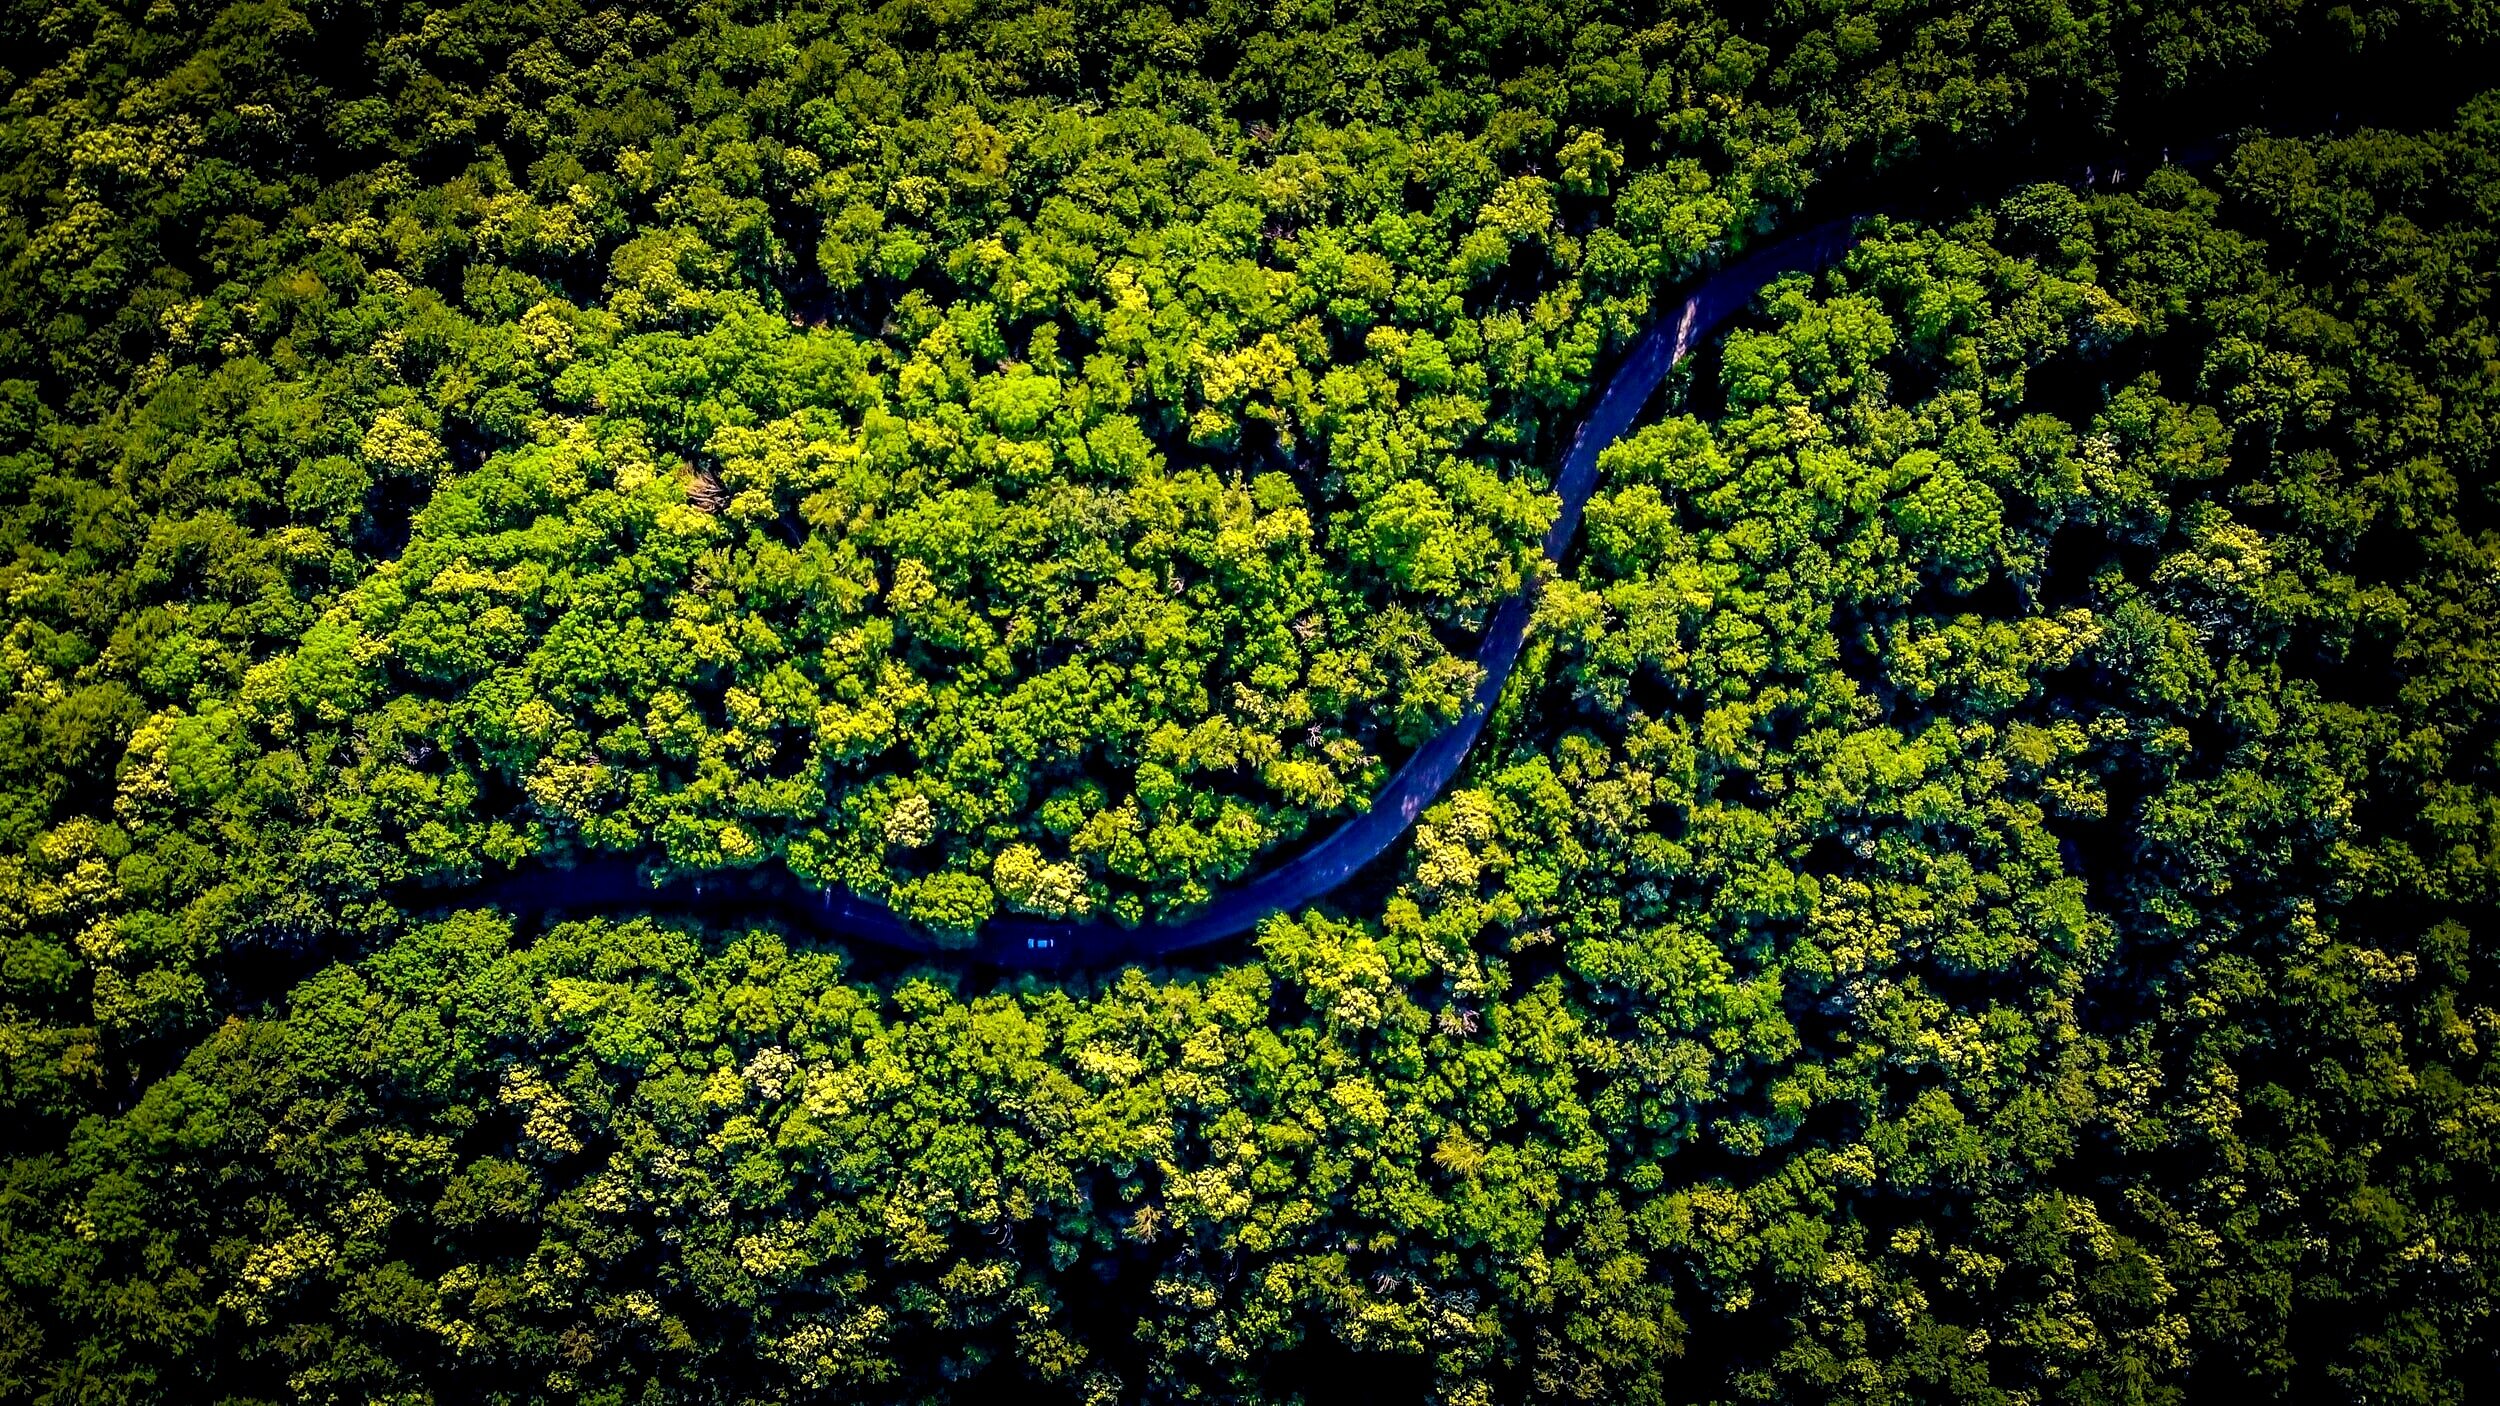 Brazilian invention boosts reforestation